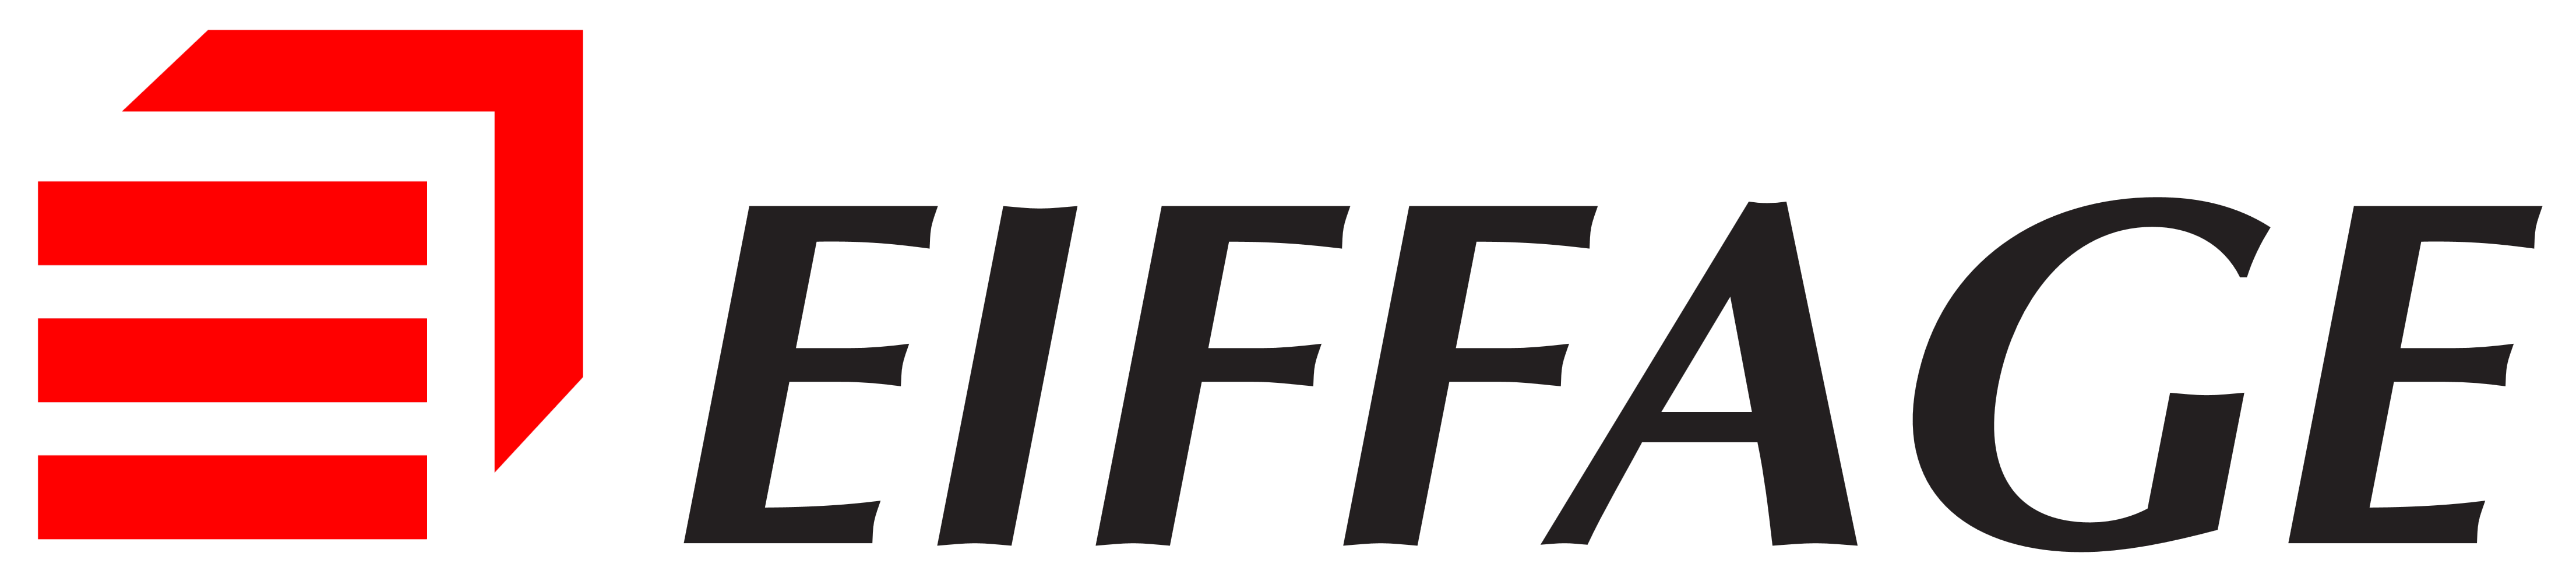 Eiffage Logo - Eiffage